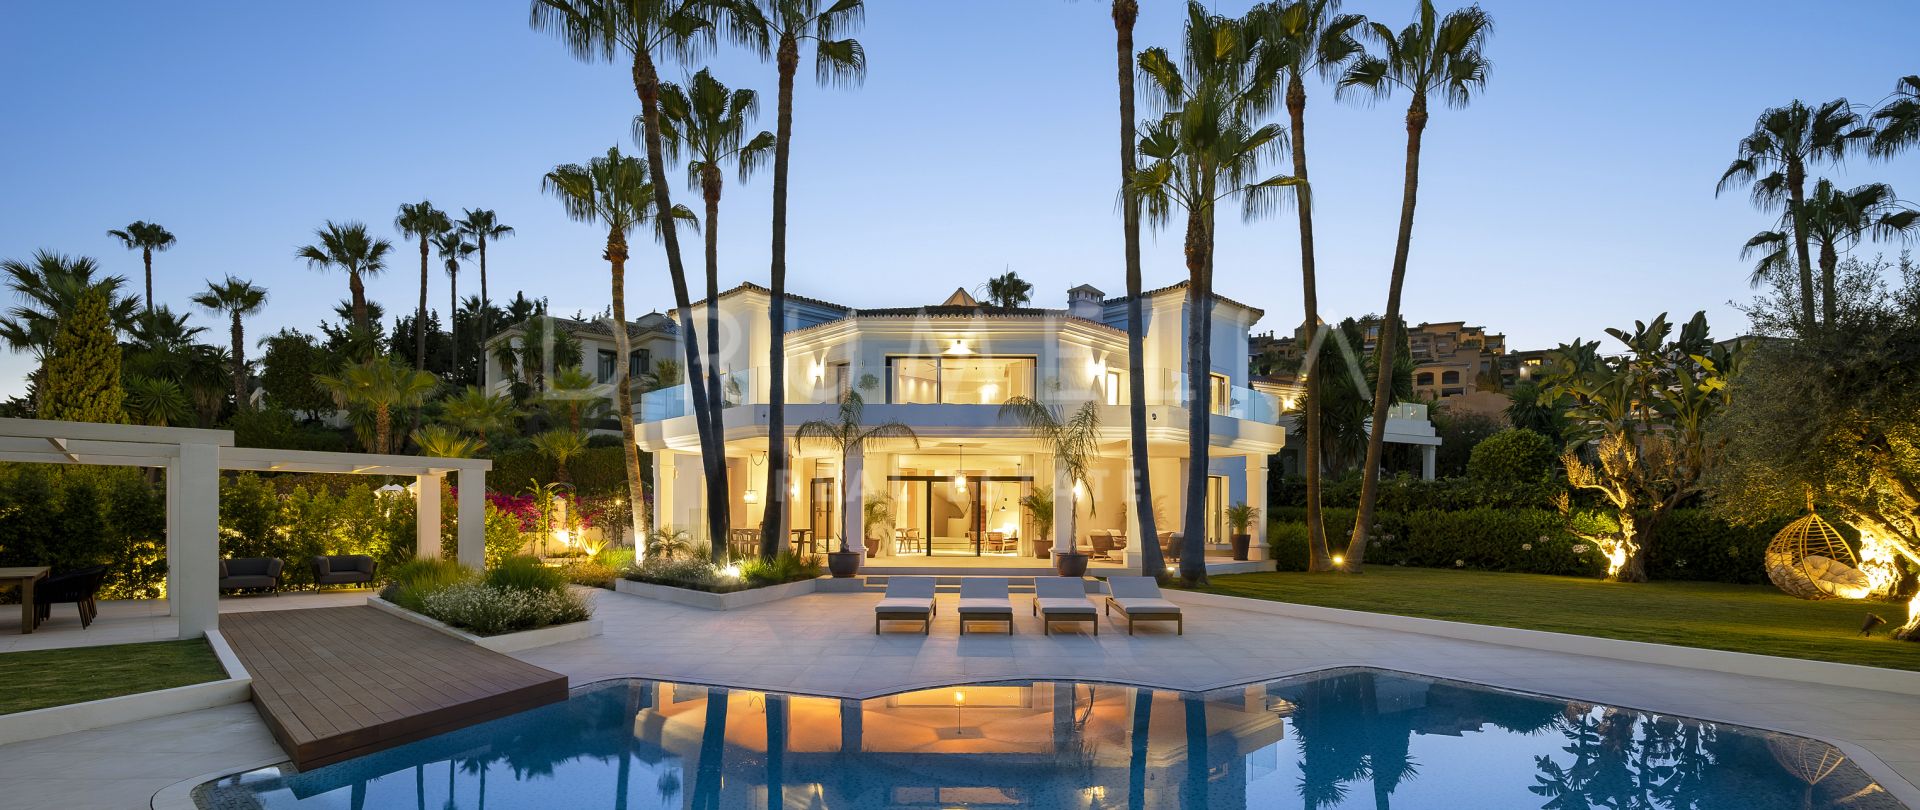 Beautiful and stylish renovated luxury villa for sale in La Cerquilla, Nueva Andalucia, Marbella